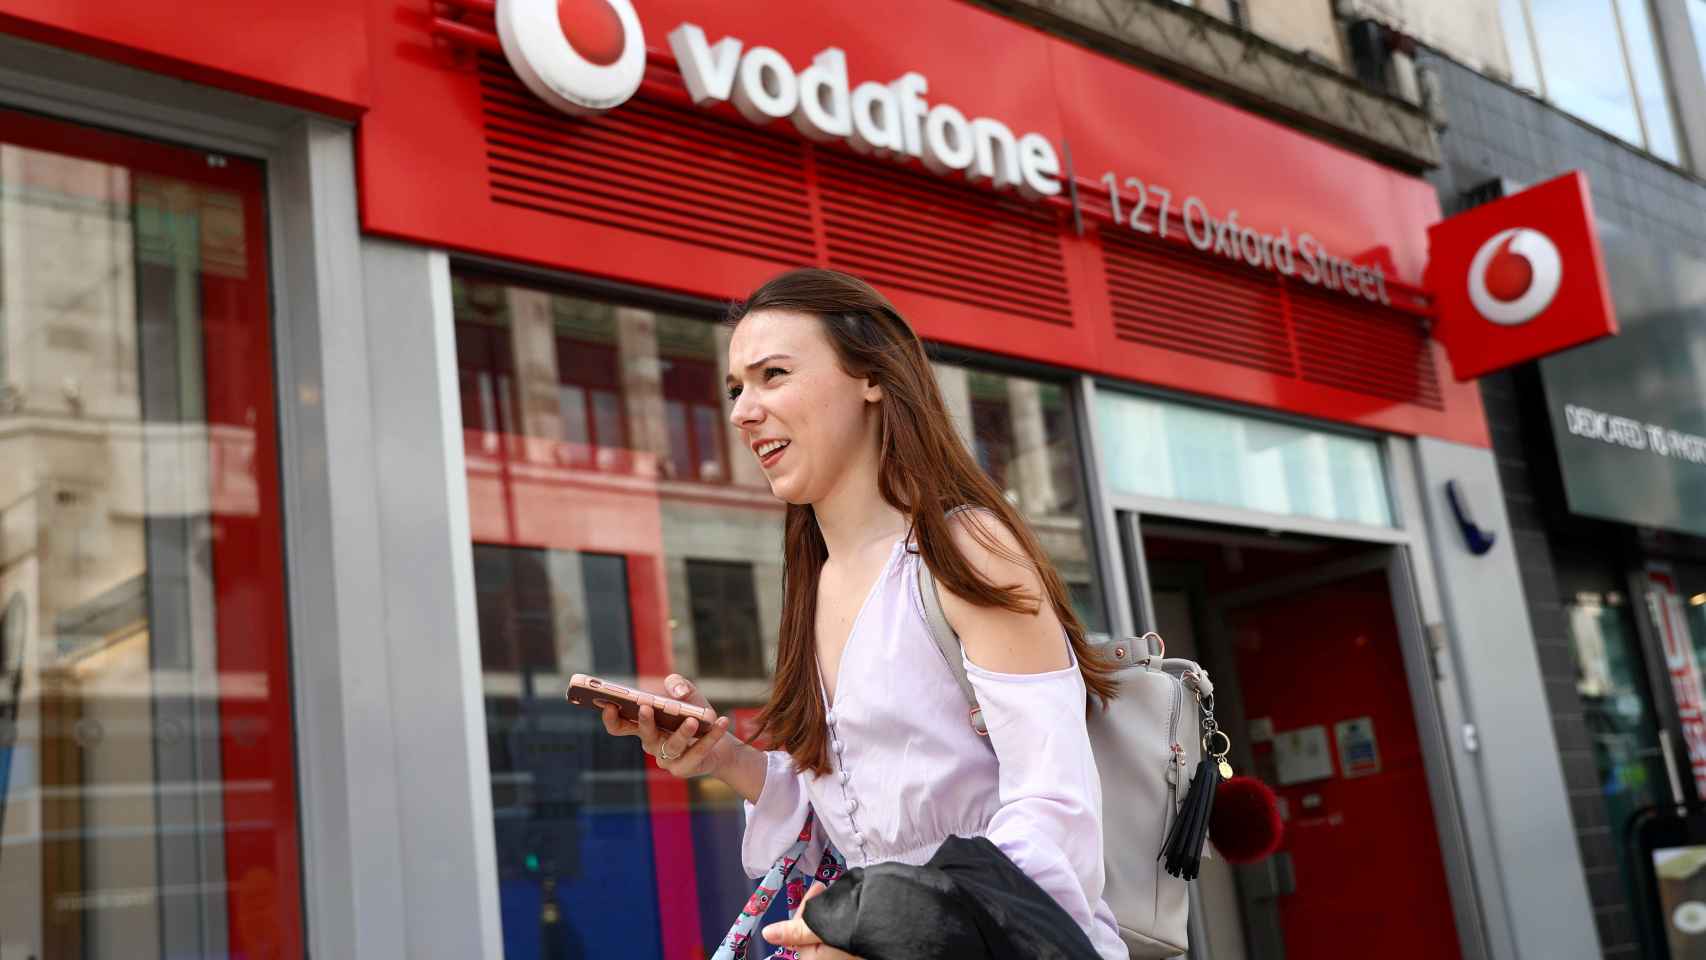 Una tienda de Vodafone en una imagen de archivo.